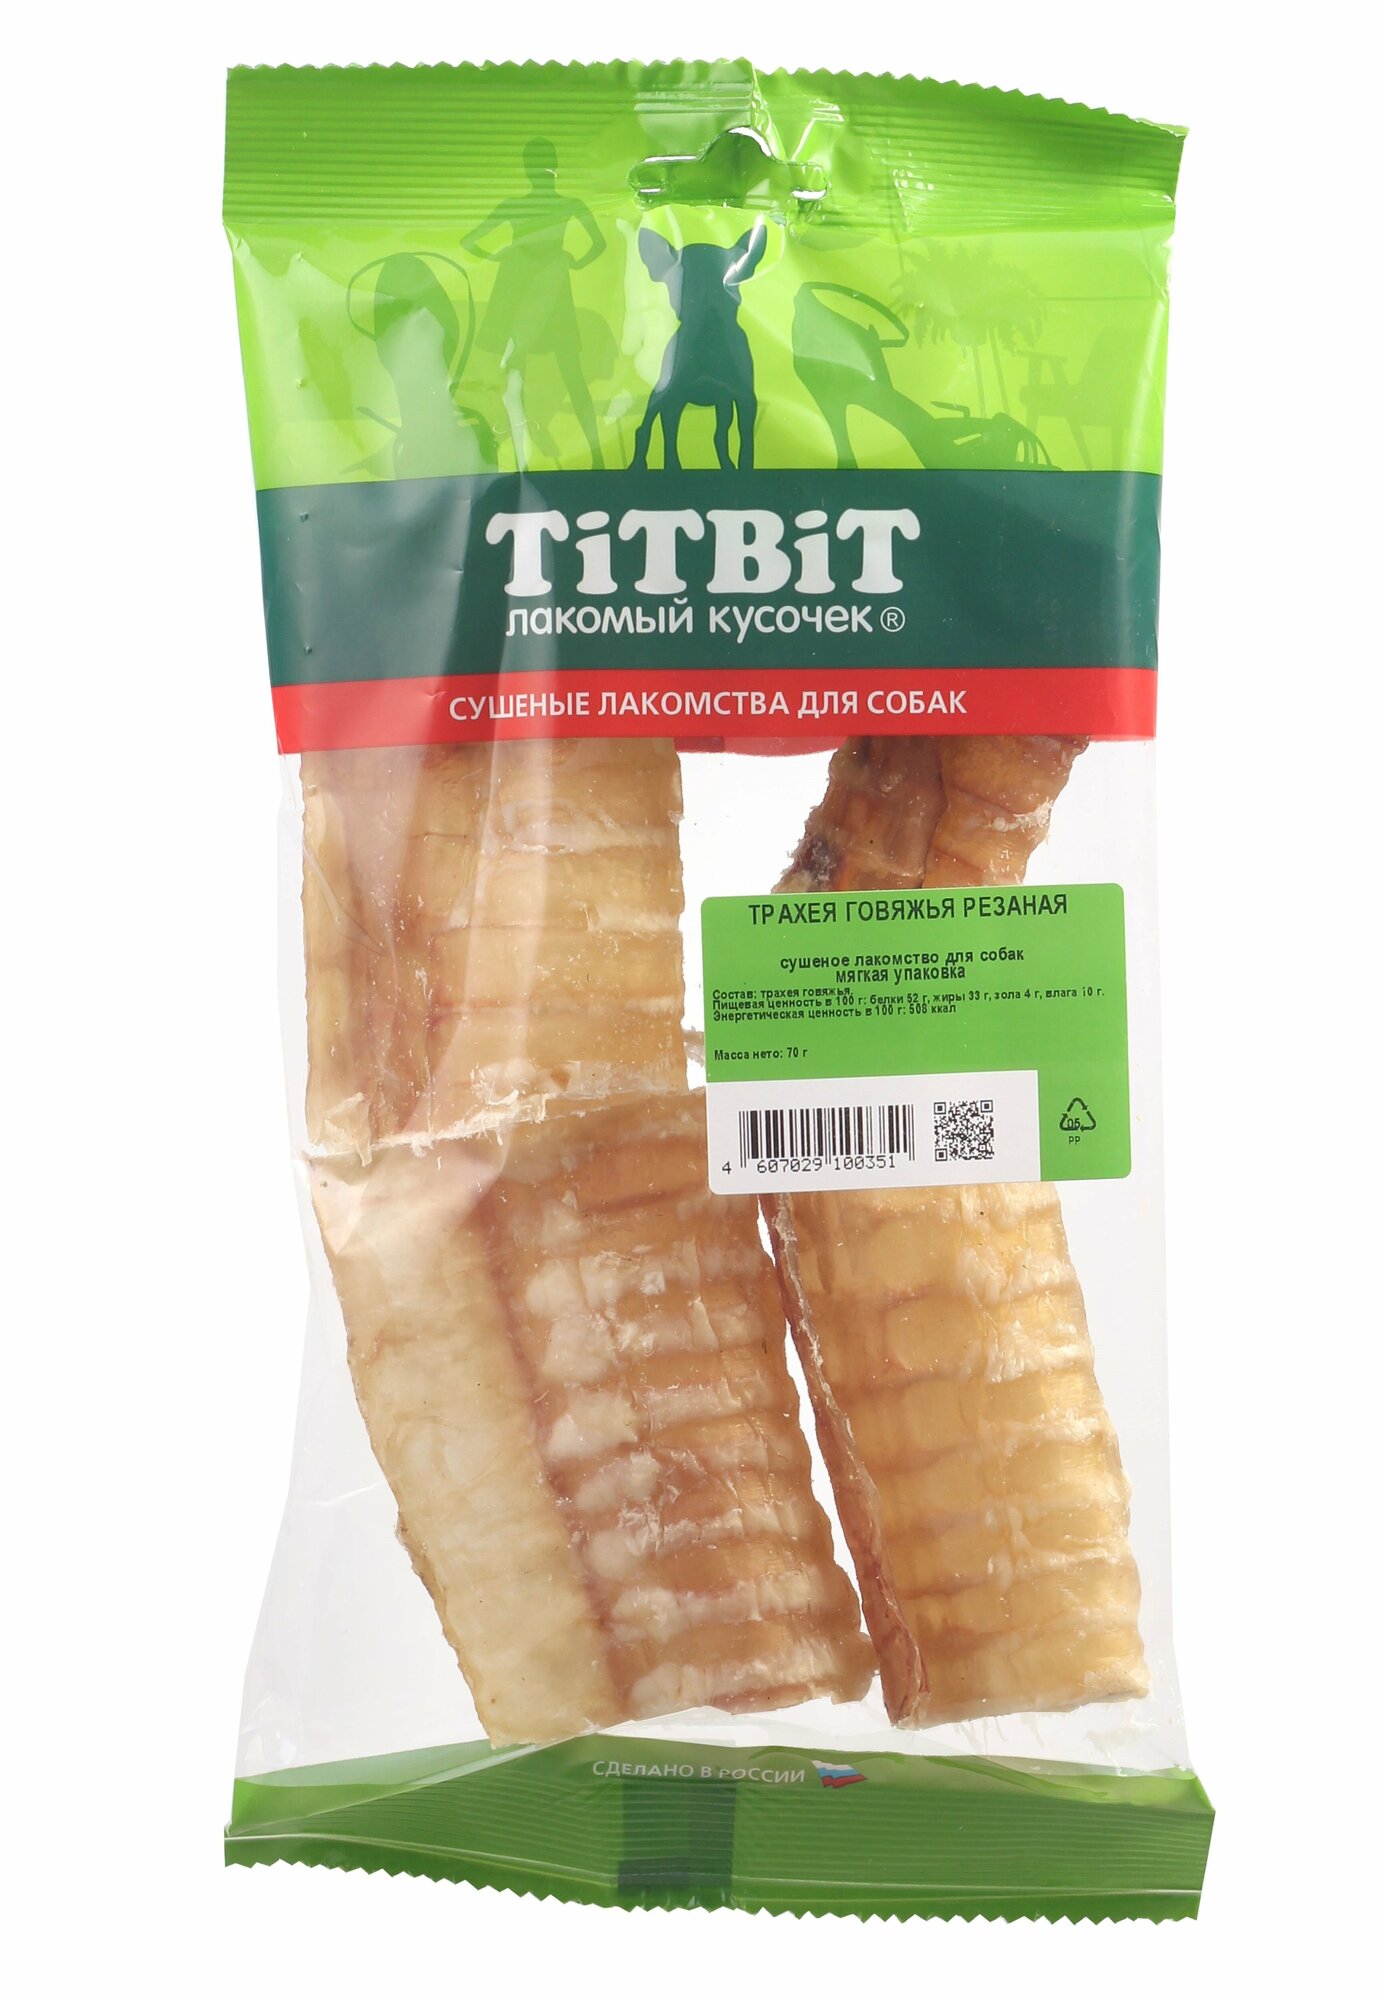 Лакомство для собак Titbit Трахея говяжья резаная лакомство для собак 0,07 кг - фото №3